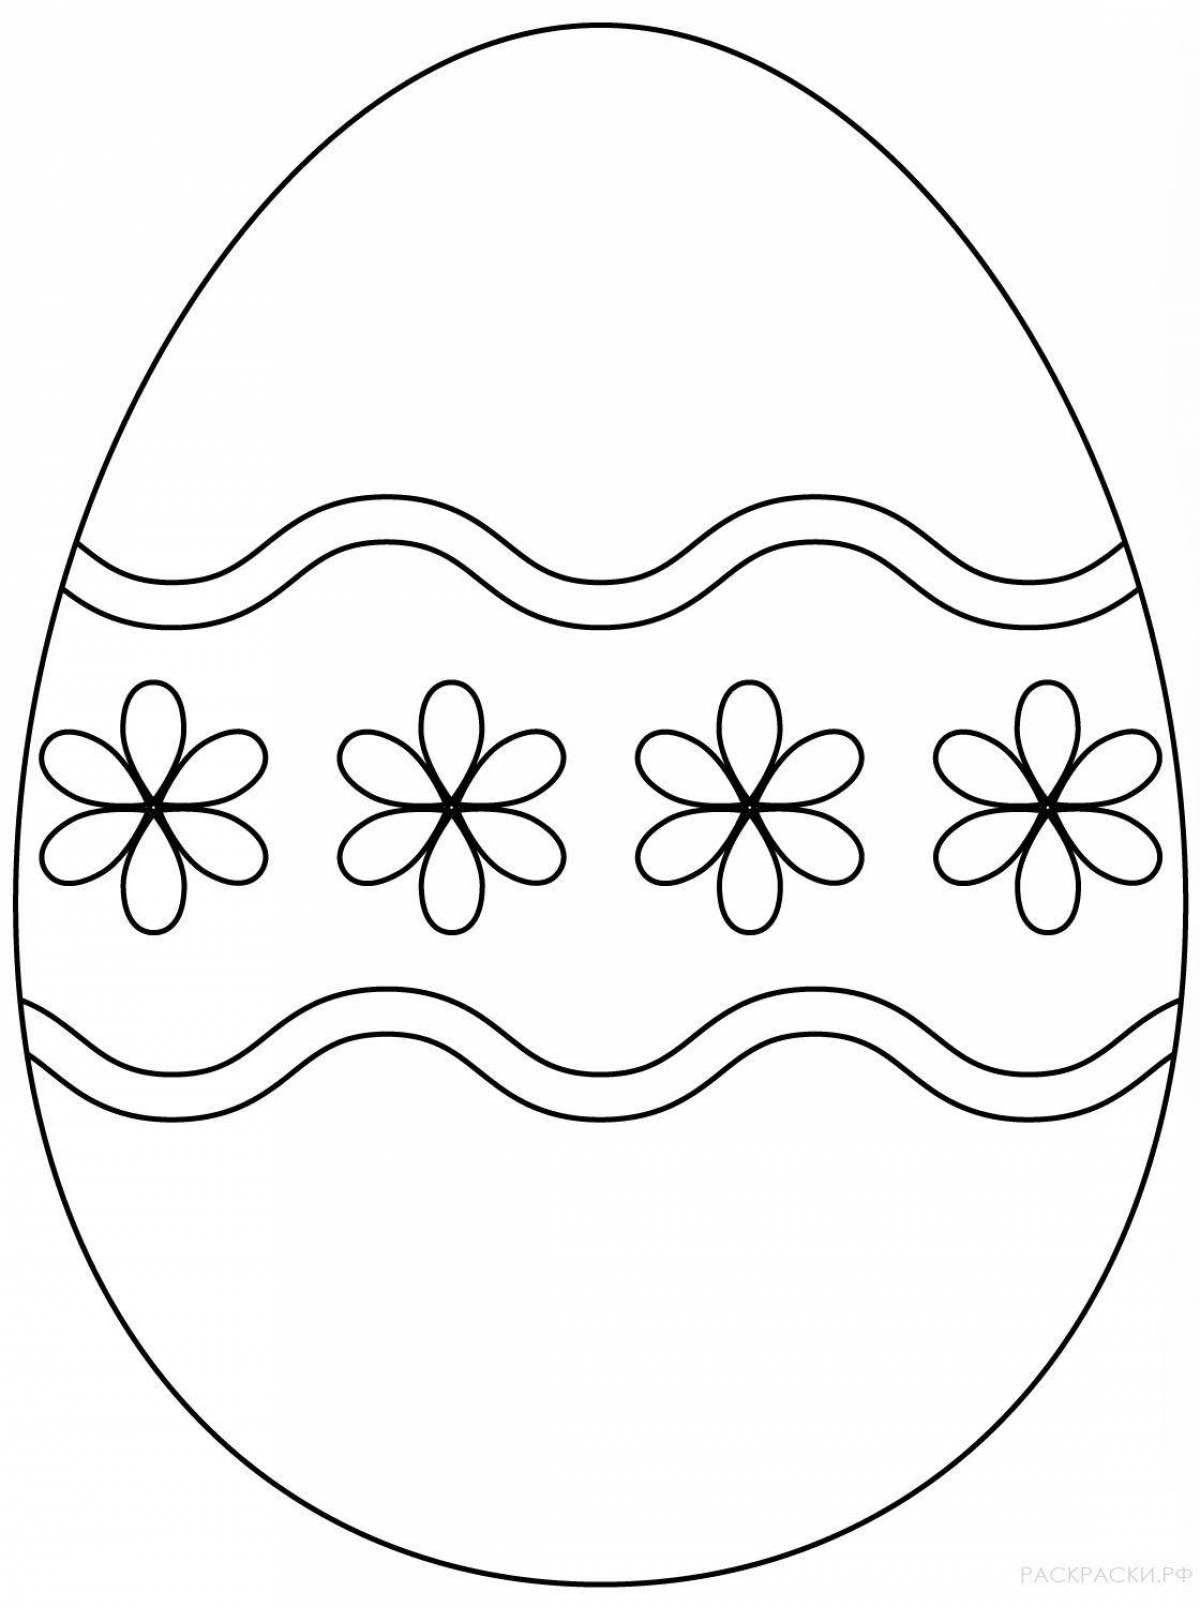 Праздничная раскраска пасхальных яиц для детей